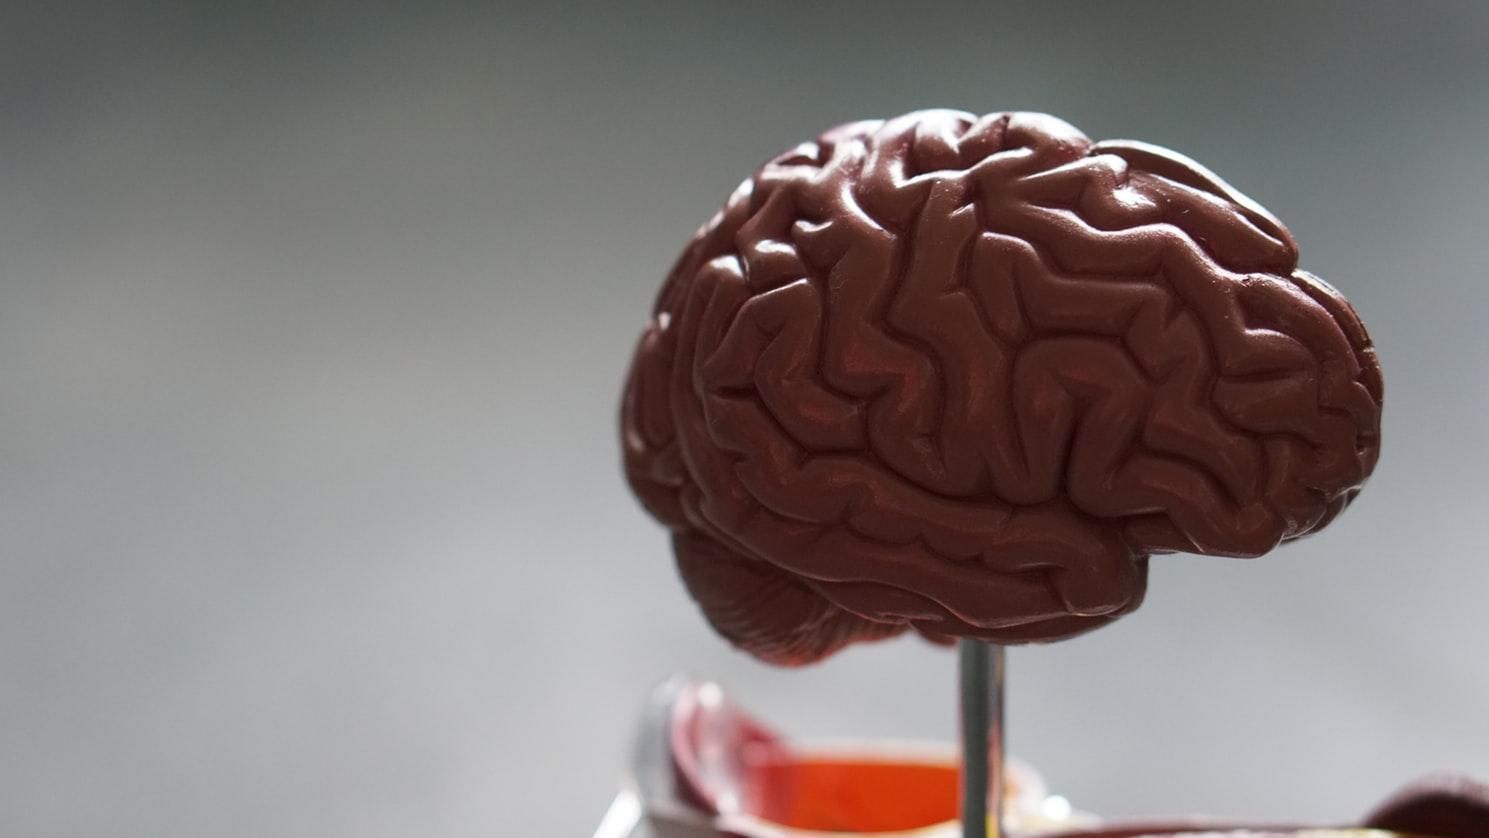 МРТ підтвердило: мозок злочинців виглядає не так, як у звичайних людей